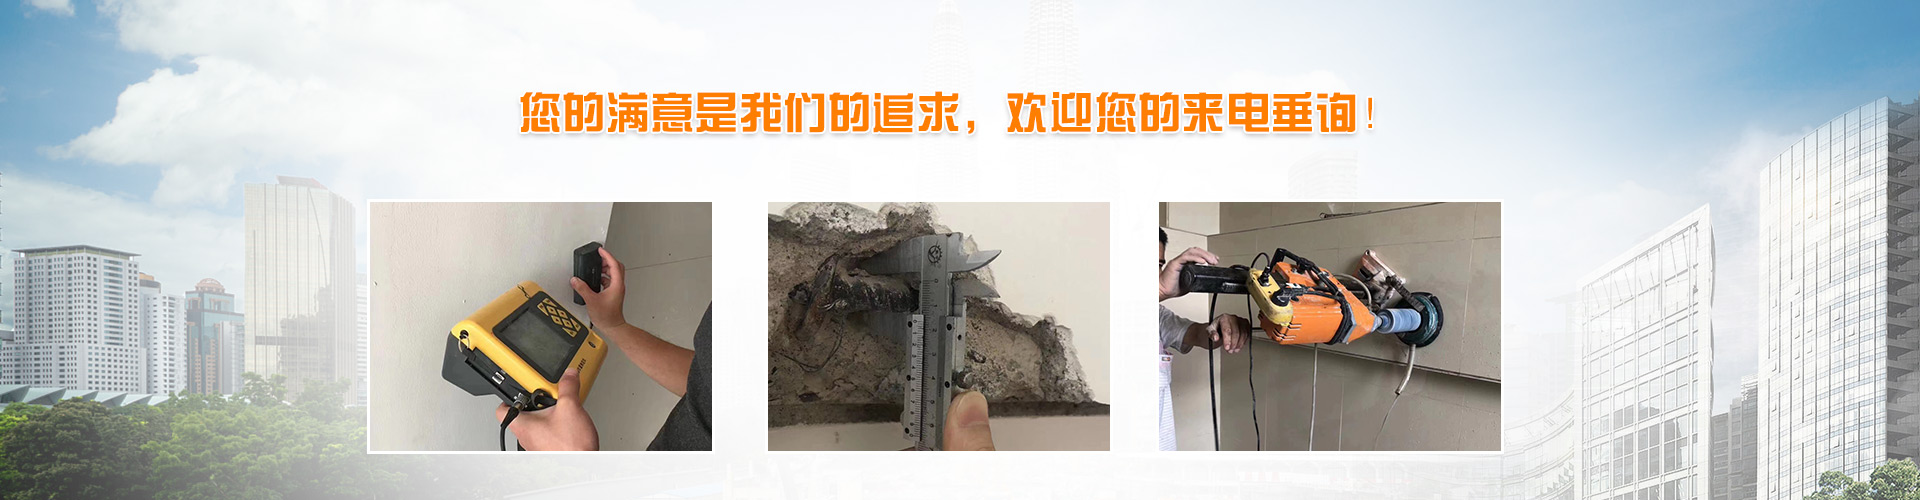 深圳市火灾后房屋安全检测鉴定及评估中心